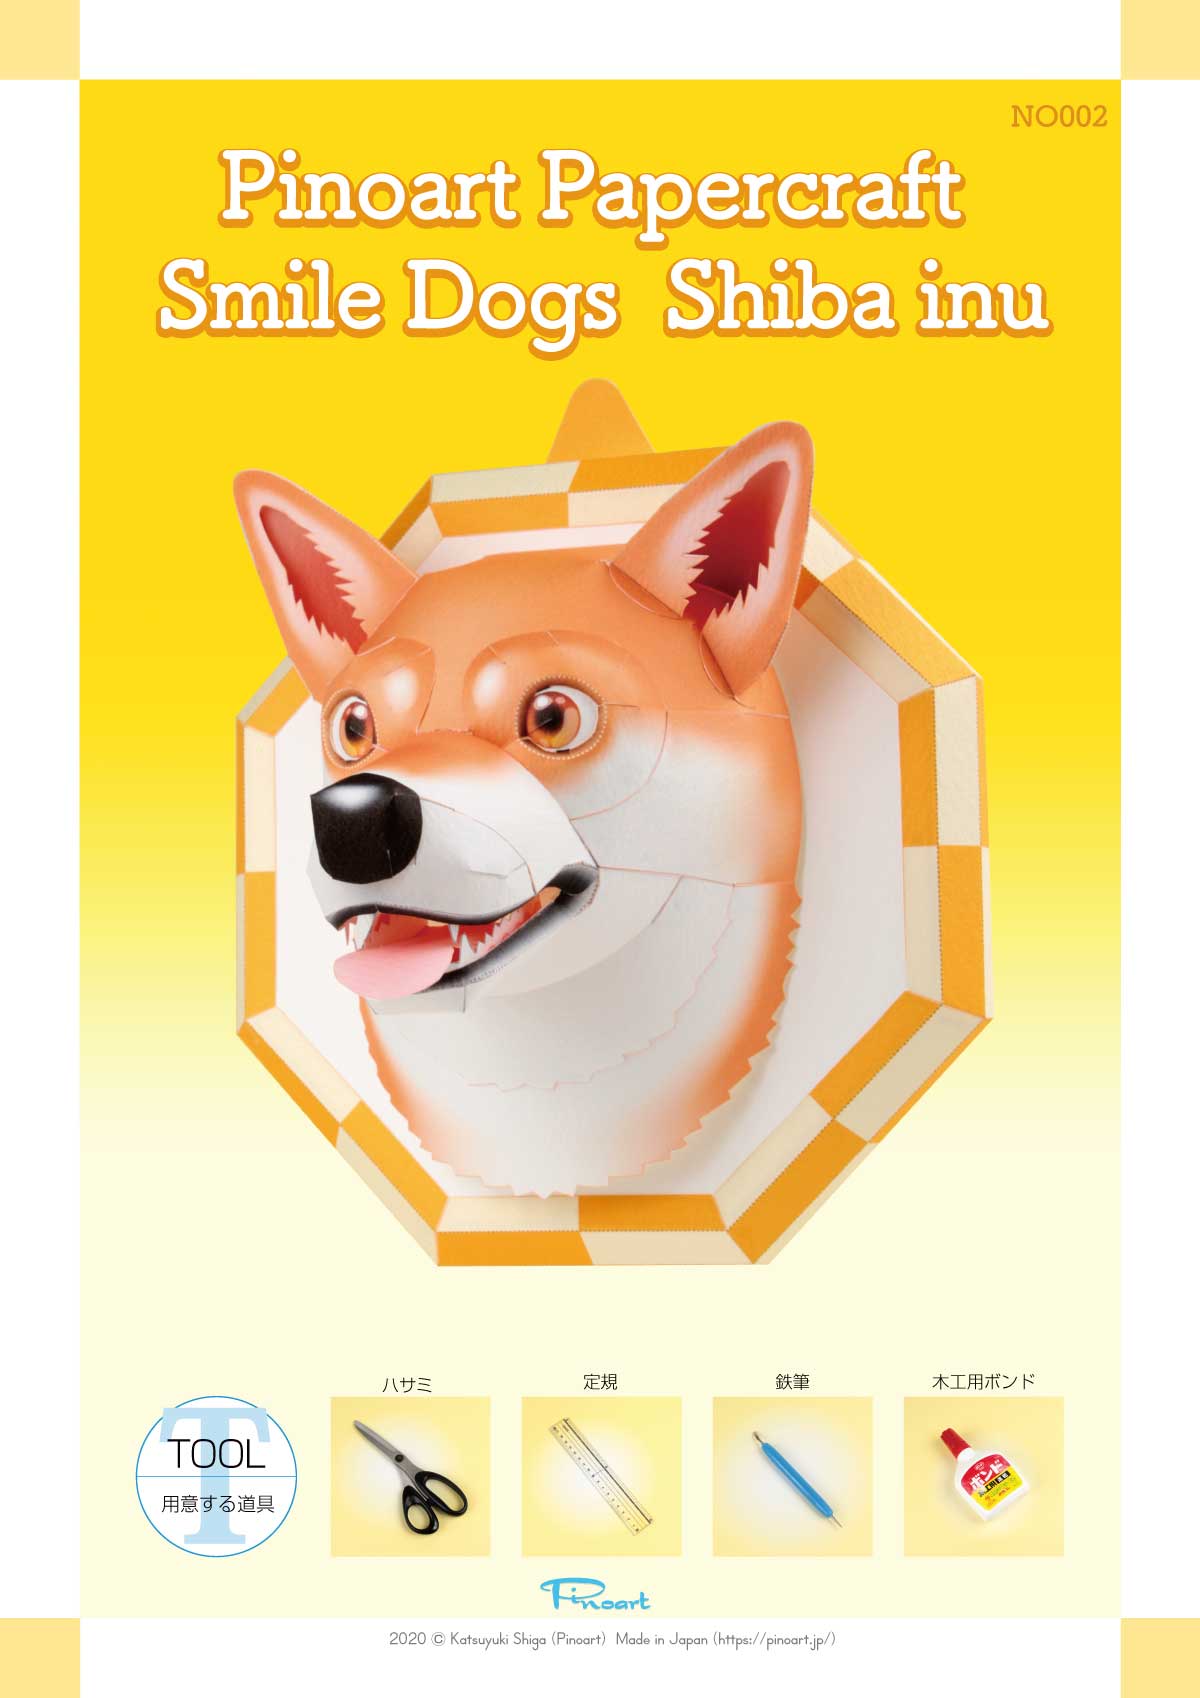 犬のペーパークラフト 柴犬 笑顔になれる スマイルドッグ 柴犬 を作りましょう ペーパークラフト ブログ From ぴのアート